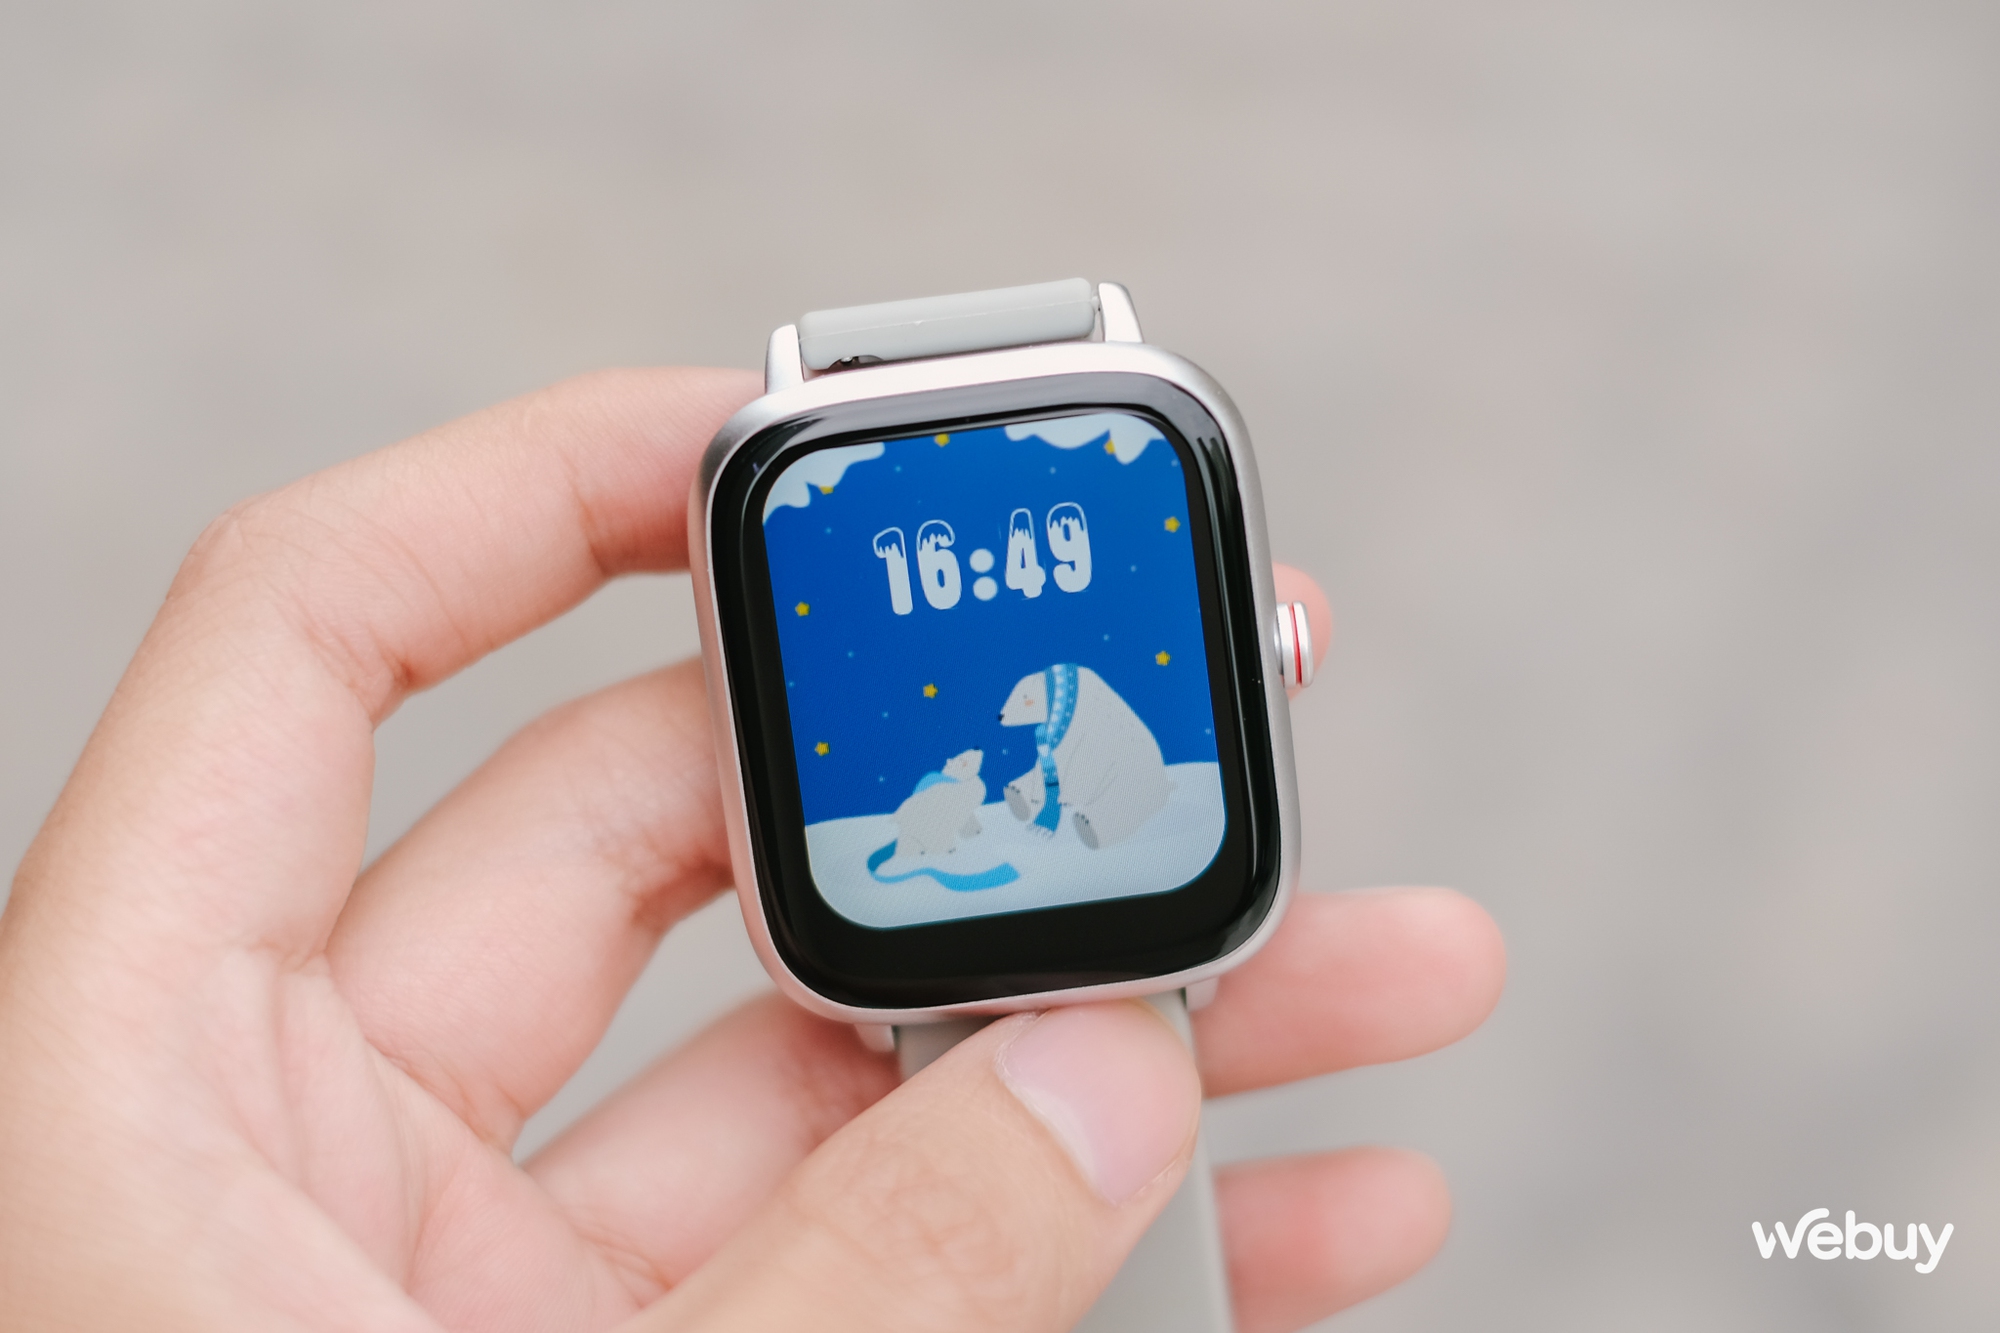 Smartwatch chính hãng giá 490.000 đồng: Thiết kế giống Apple Watch, khung viền nhôm, có loa/mic thoại, pin 7 ngày - Ảnh 2.